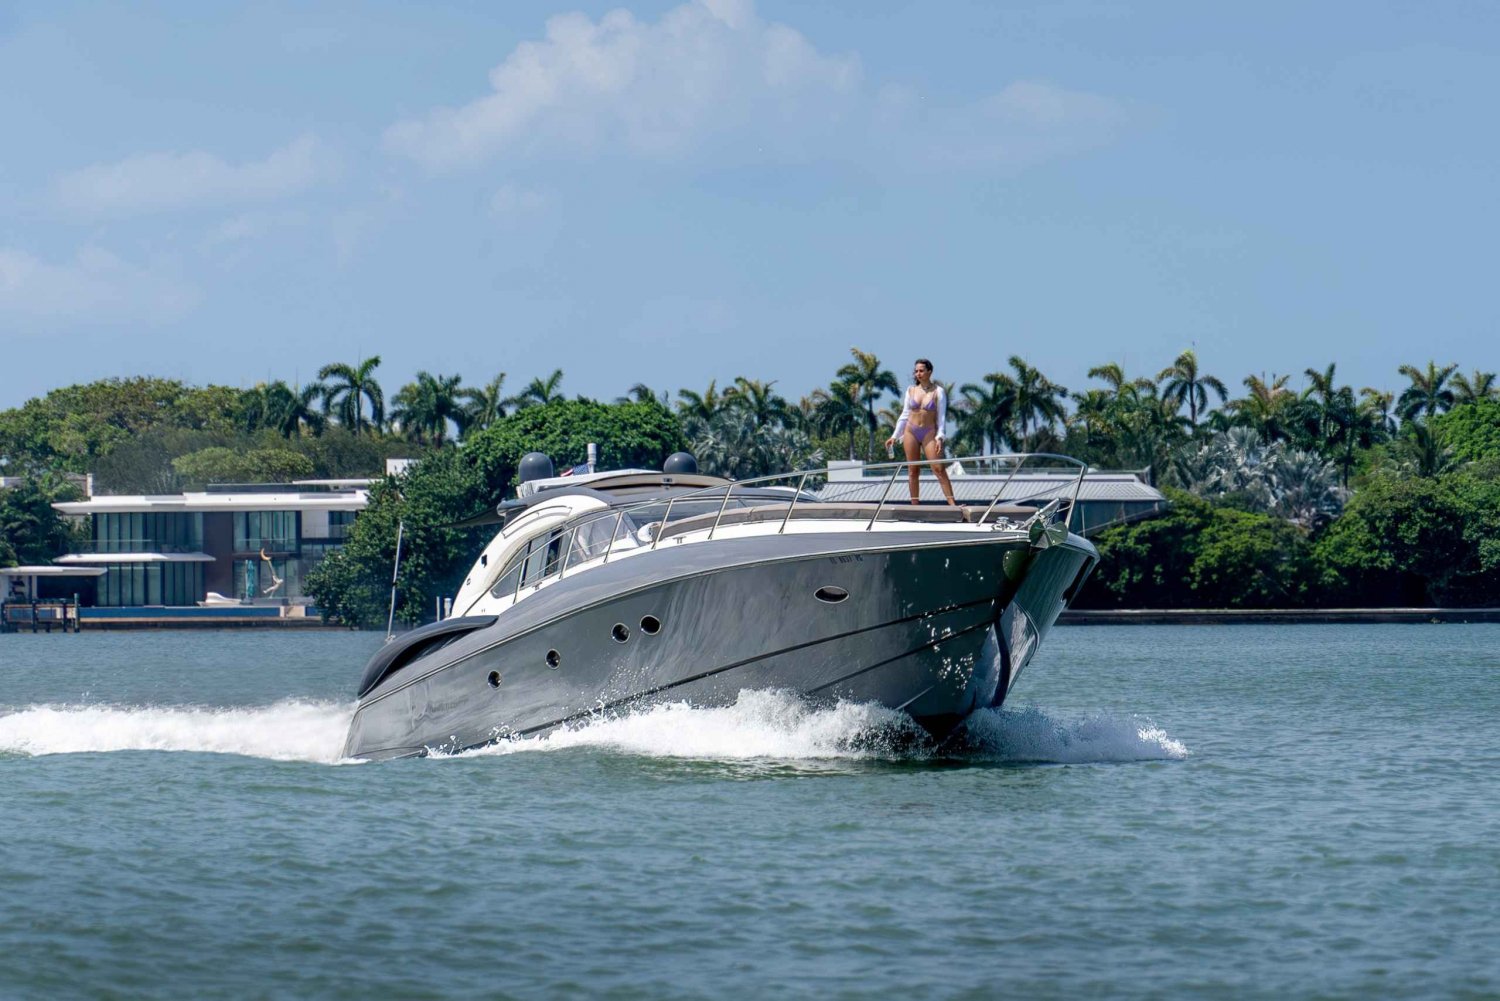 Откройте для себя магию Майами на нашей 60-футовой яхте